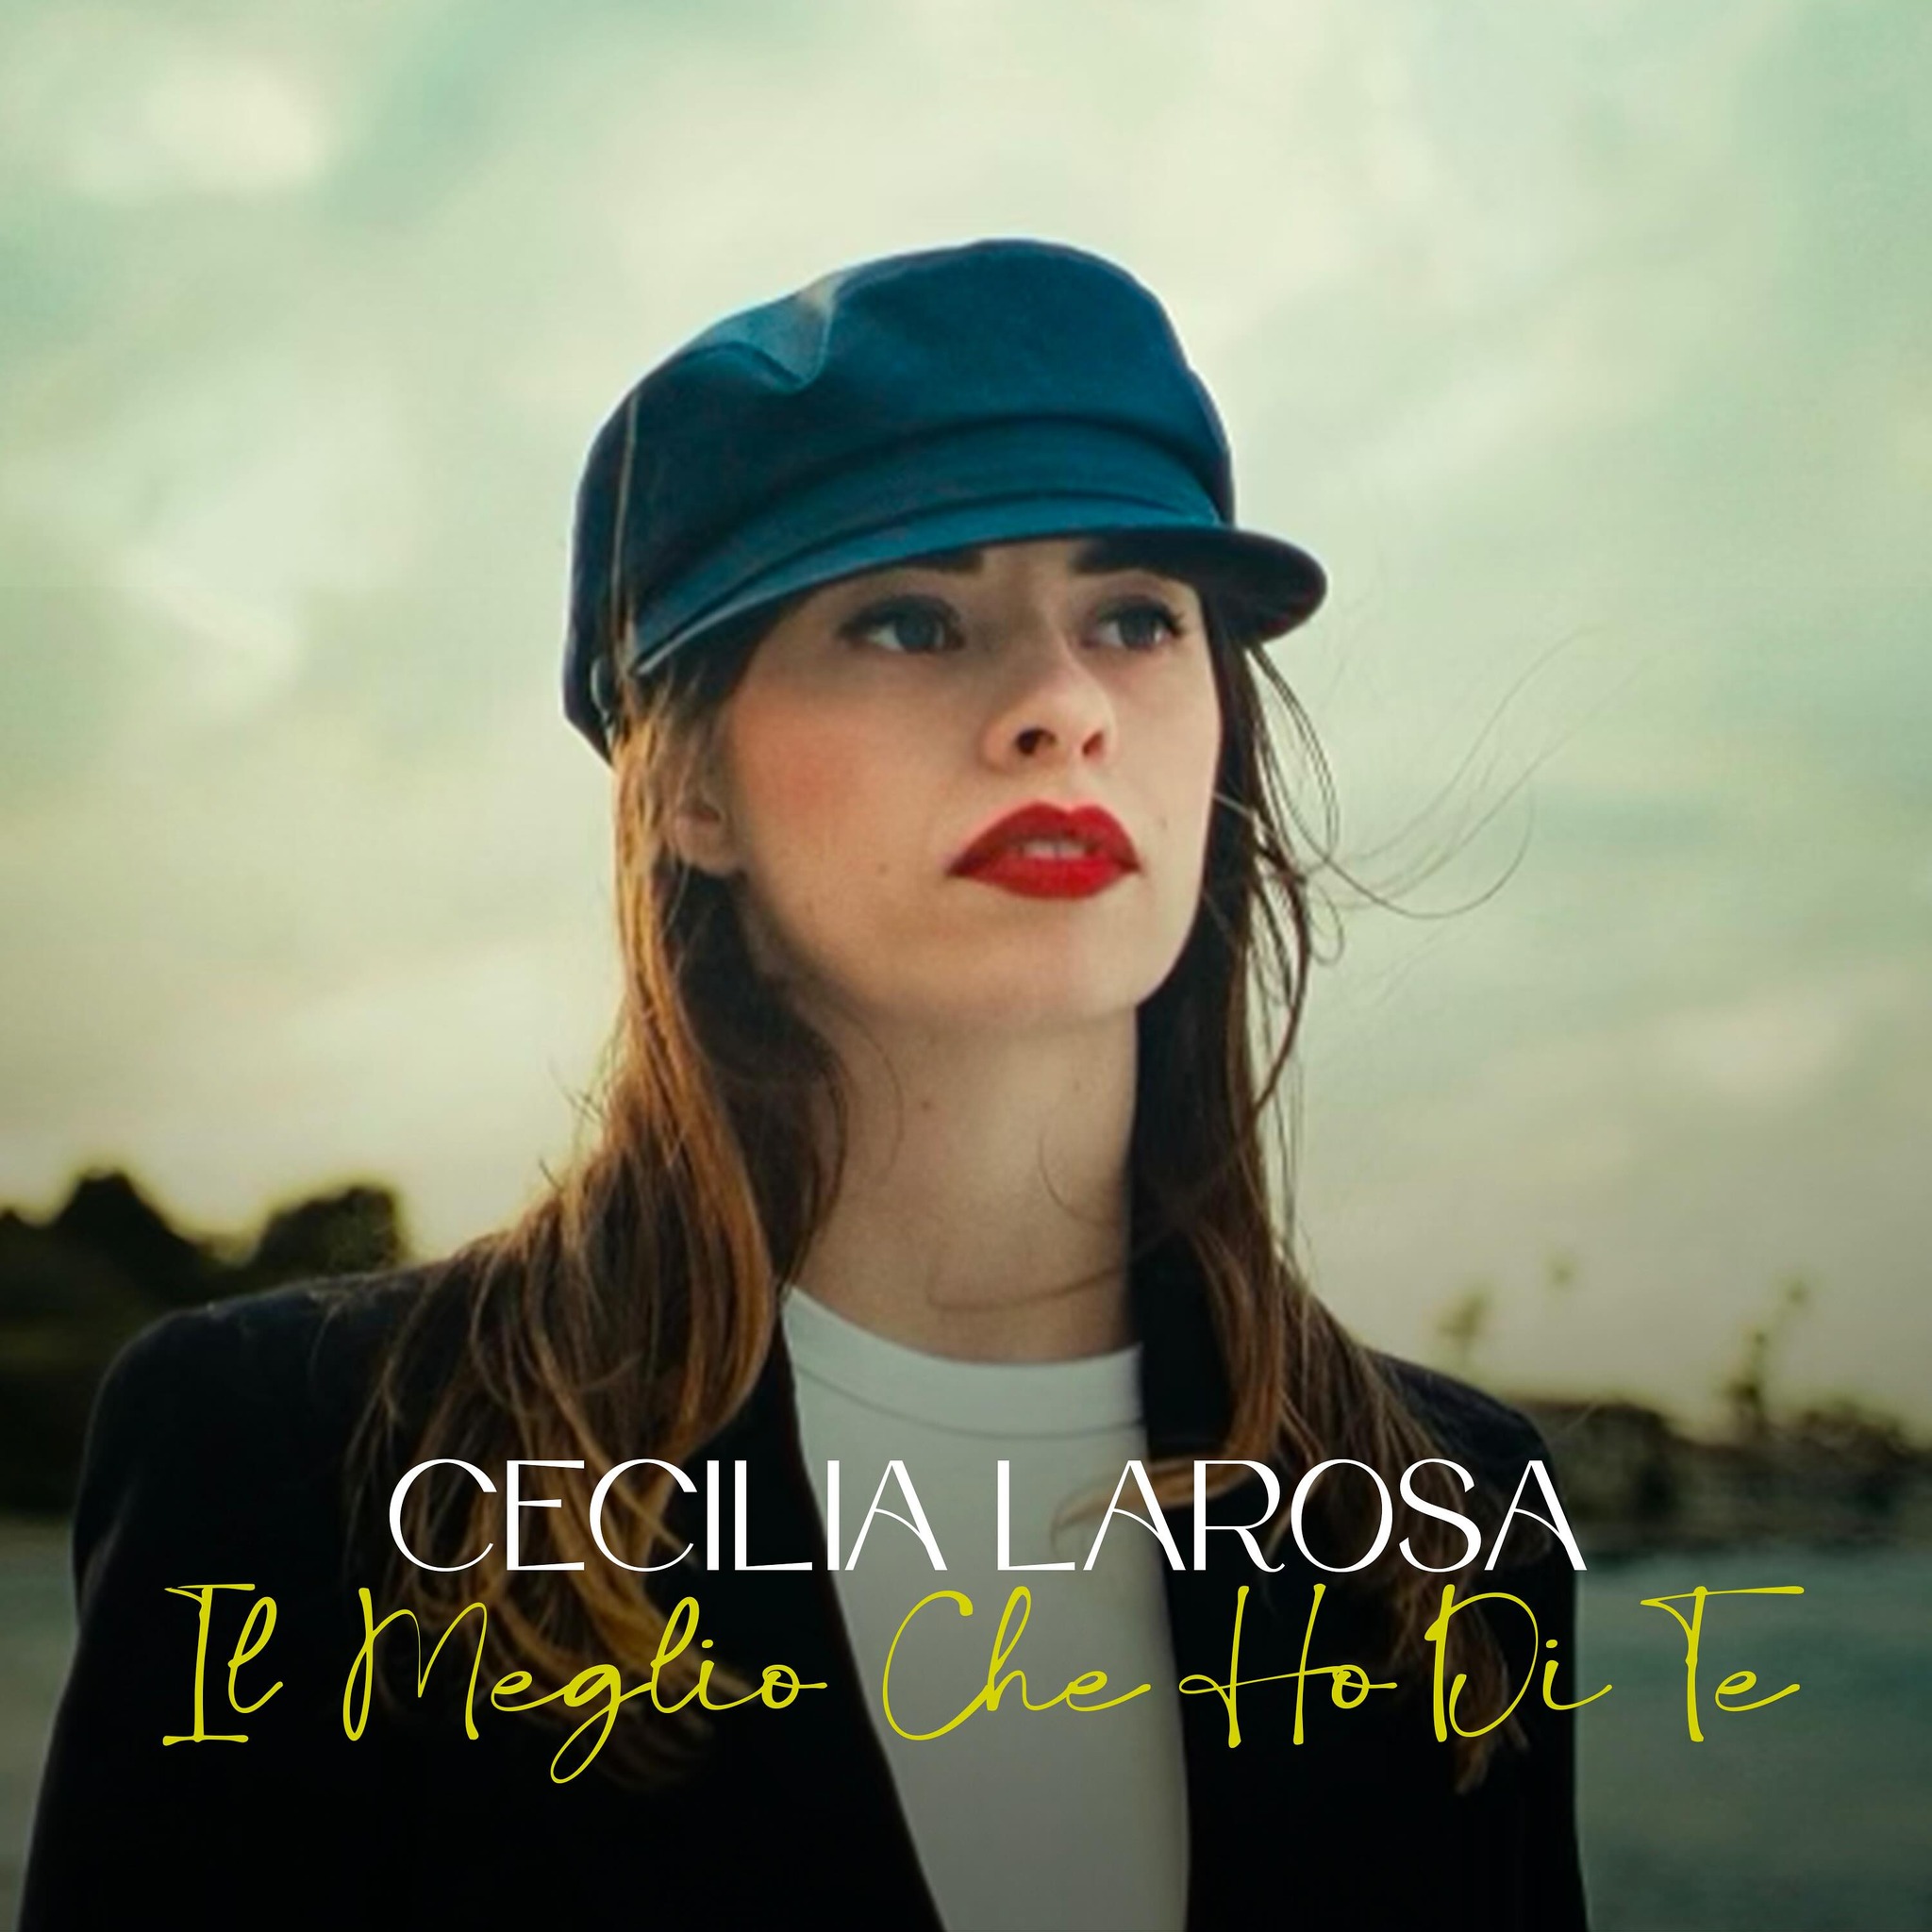 Cecilia Larosa, esce “Il Meglio che ho di te” prodotta dal maestro Piero Cassano